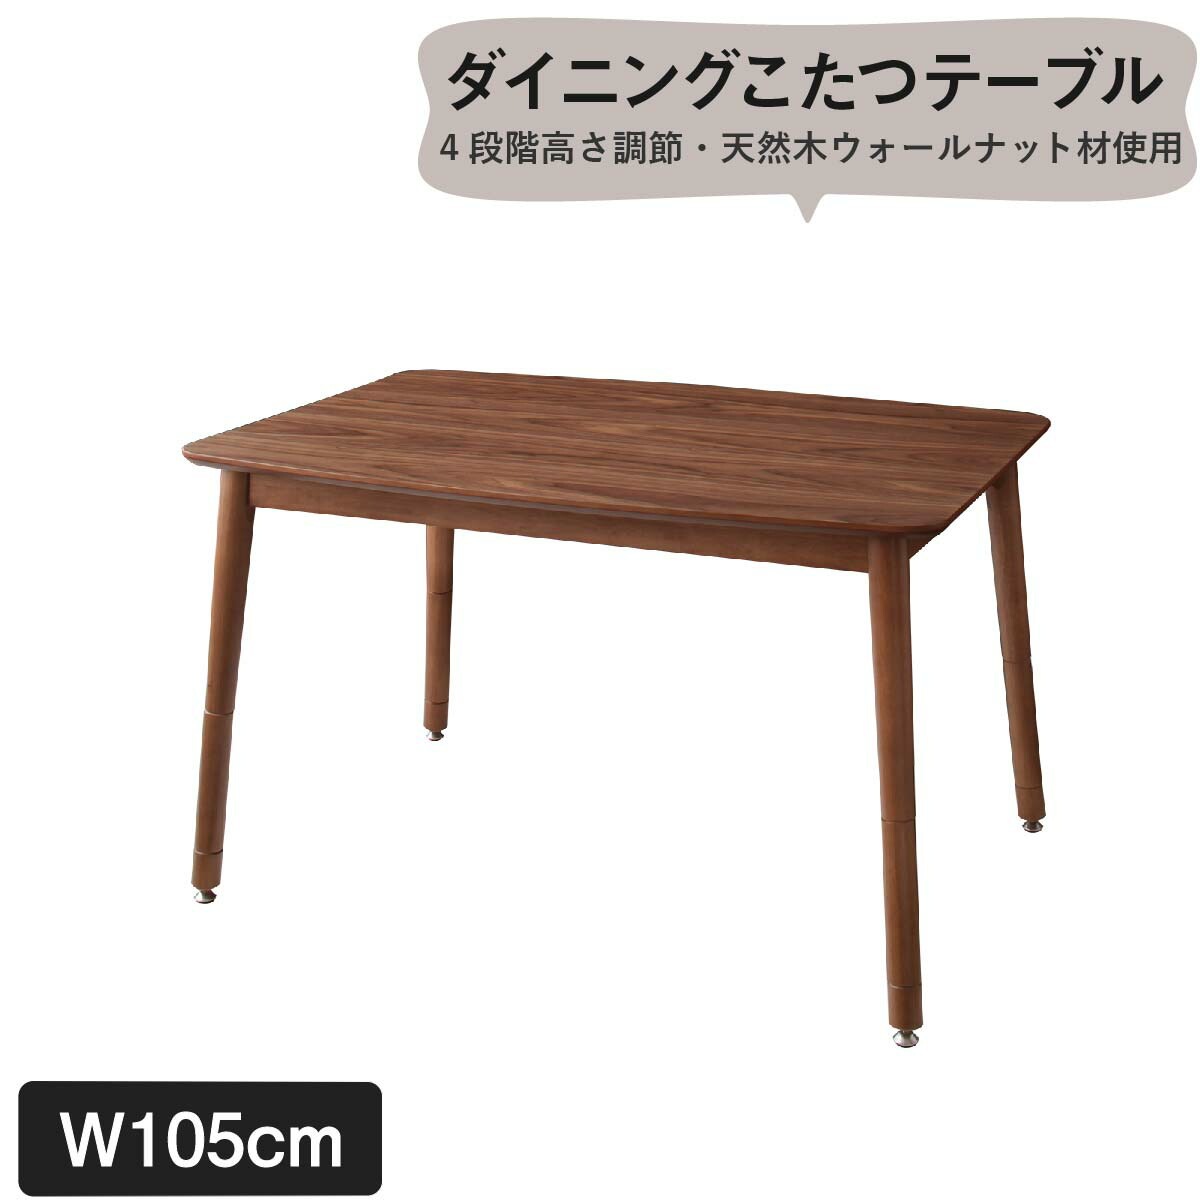 【カラー:ウォルナットブラウン】ダイニングテーブル こたつもソファも高さ調節できるリビングダイニングシリーズ ダイニングテーブル単品 W105